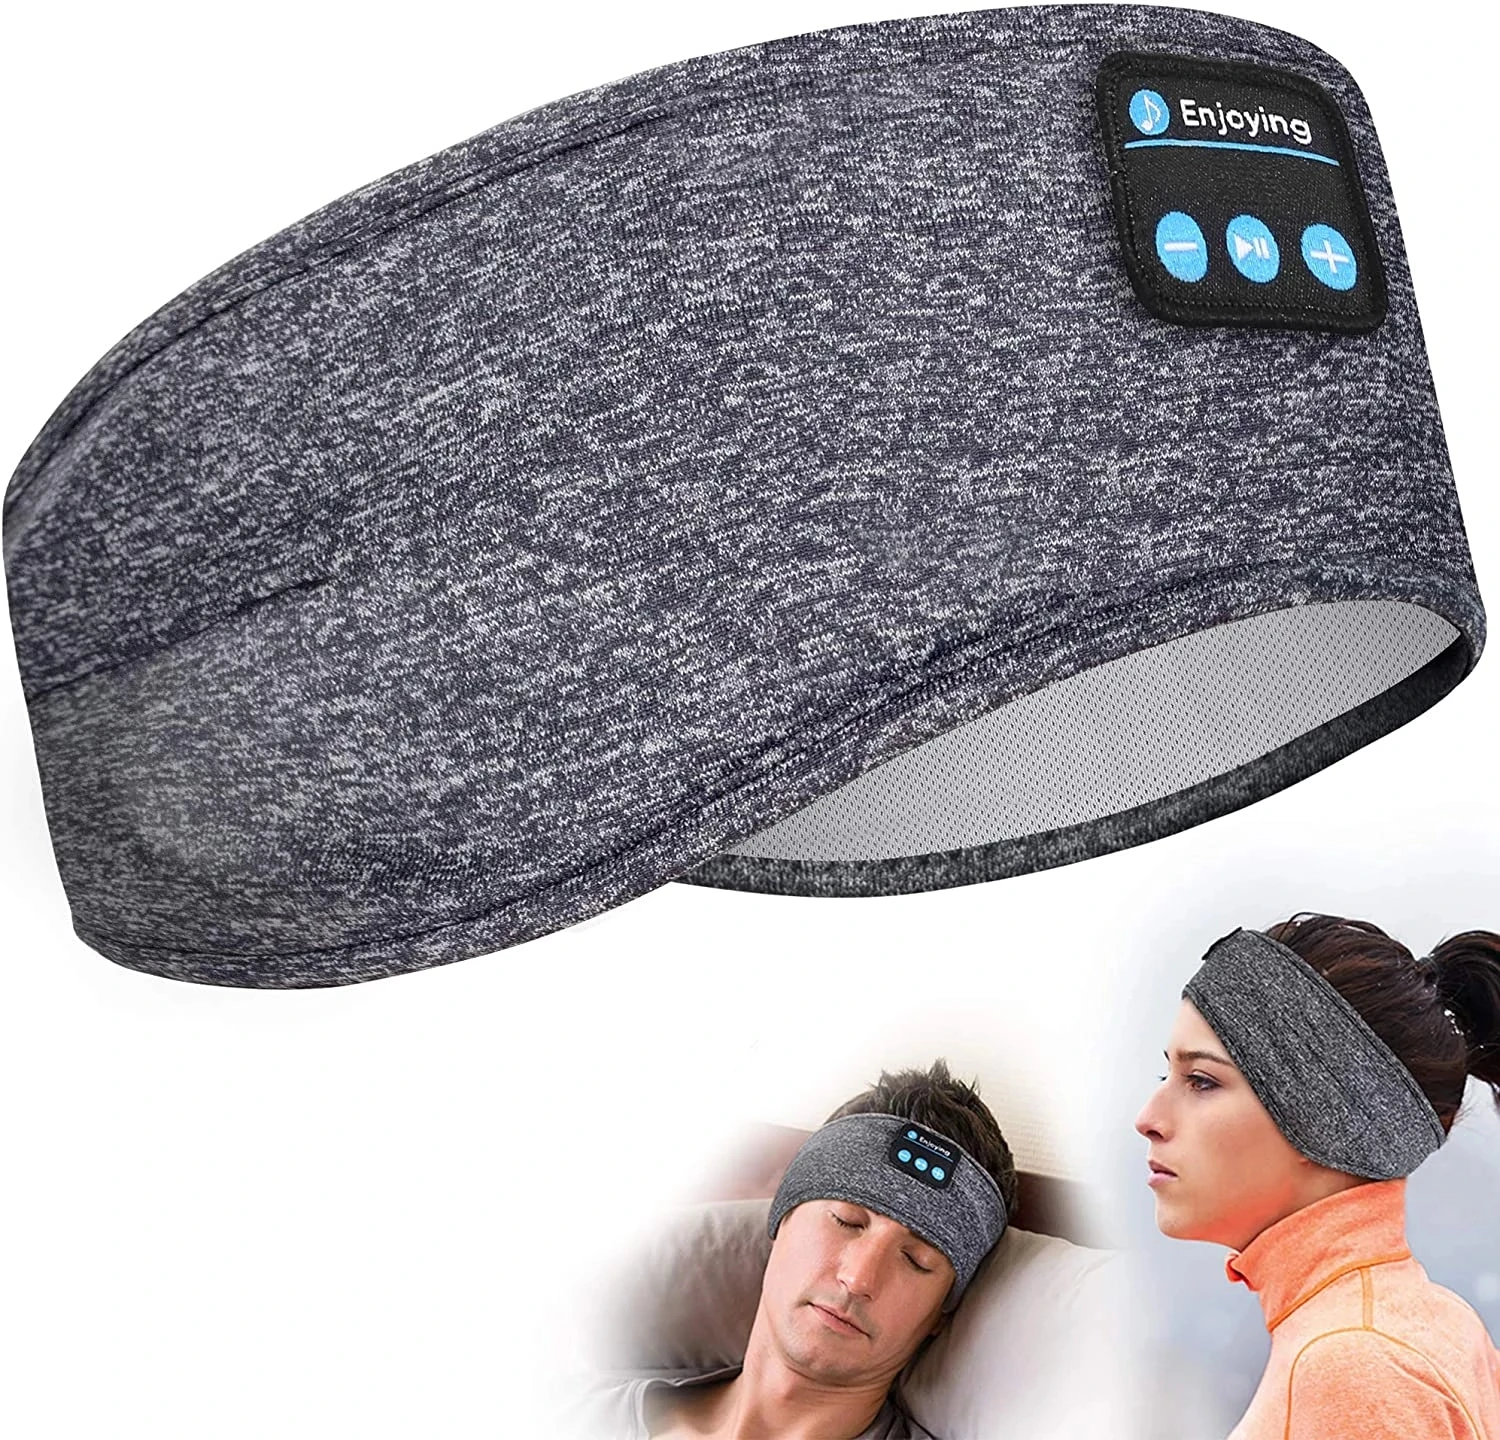 

Auriculares con Bluetooth para dormir, delgados , diadema deportiva altavoces para entrenamiento, trote, Yoga, insomnio, Viajes